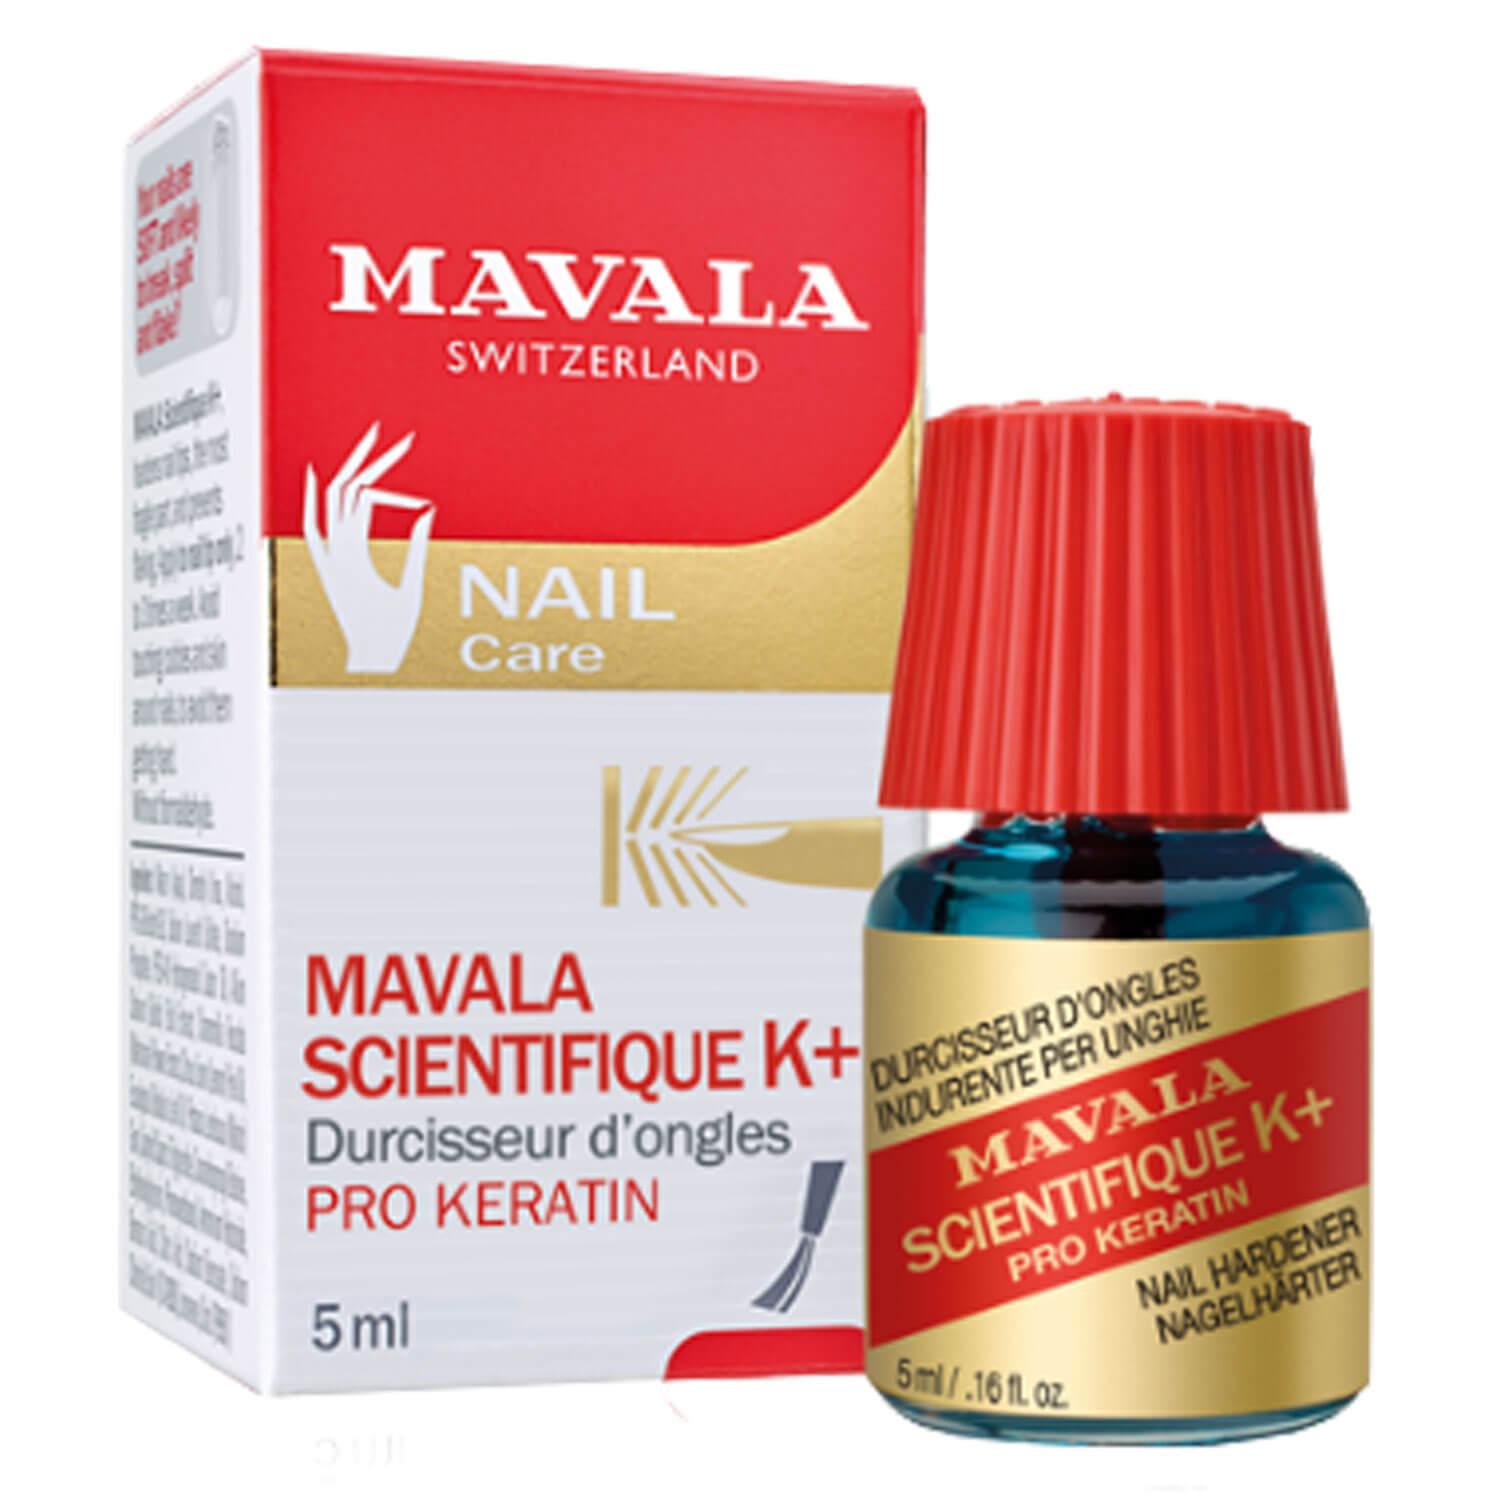 MAVALA Care - Scientifique durcisseur d'ongles K+